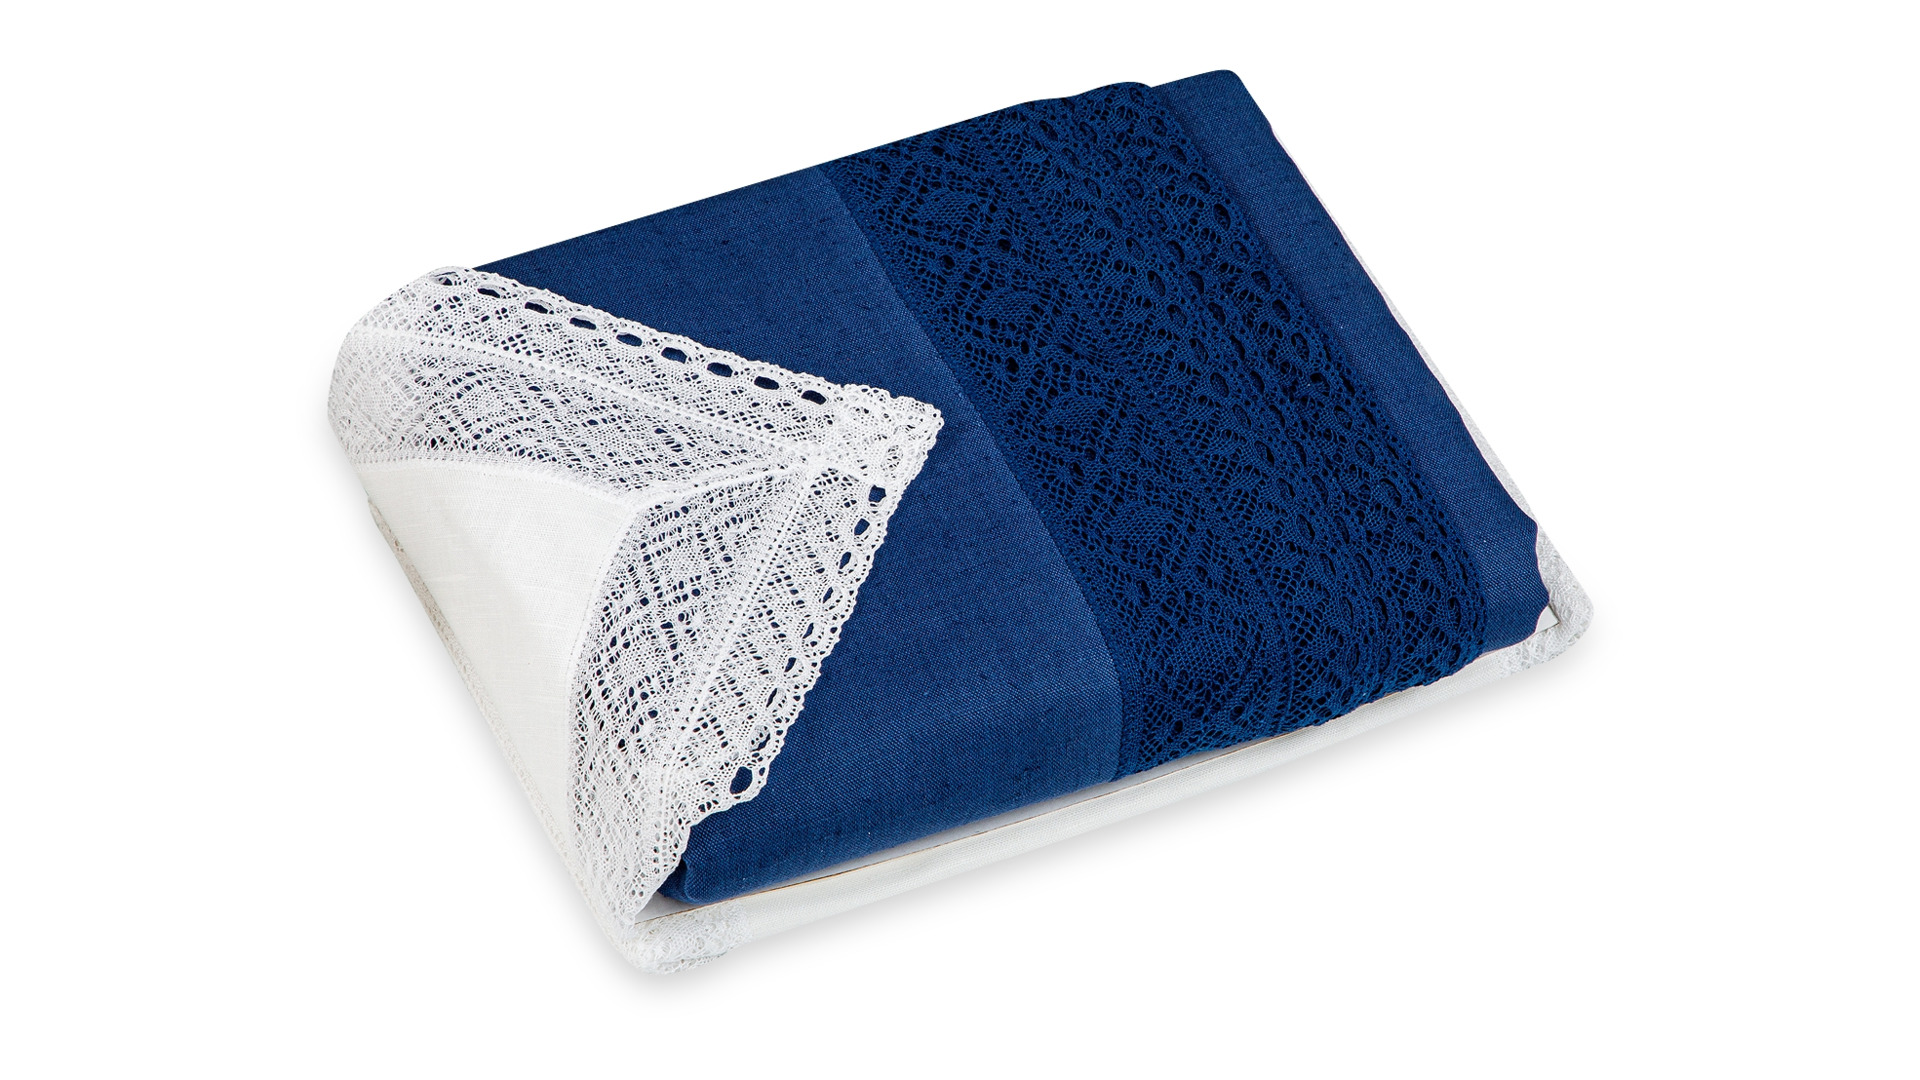 Набор текстиля для сервировки Елецкие Кружева скатерть синяя 350х170 см, салфетки белые 12 шт. 45х45